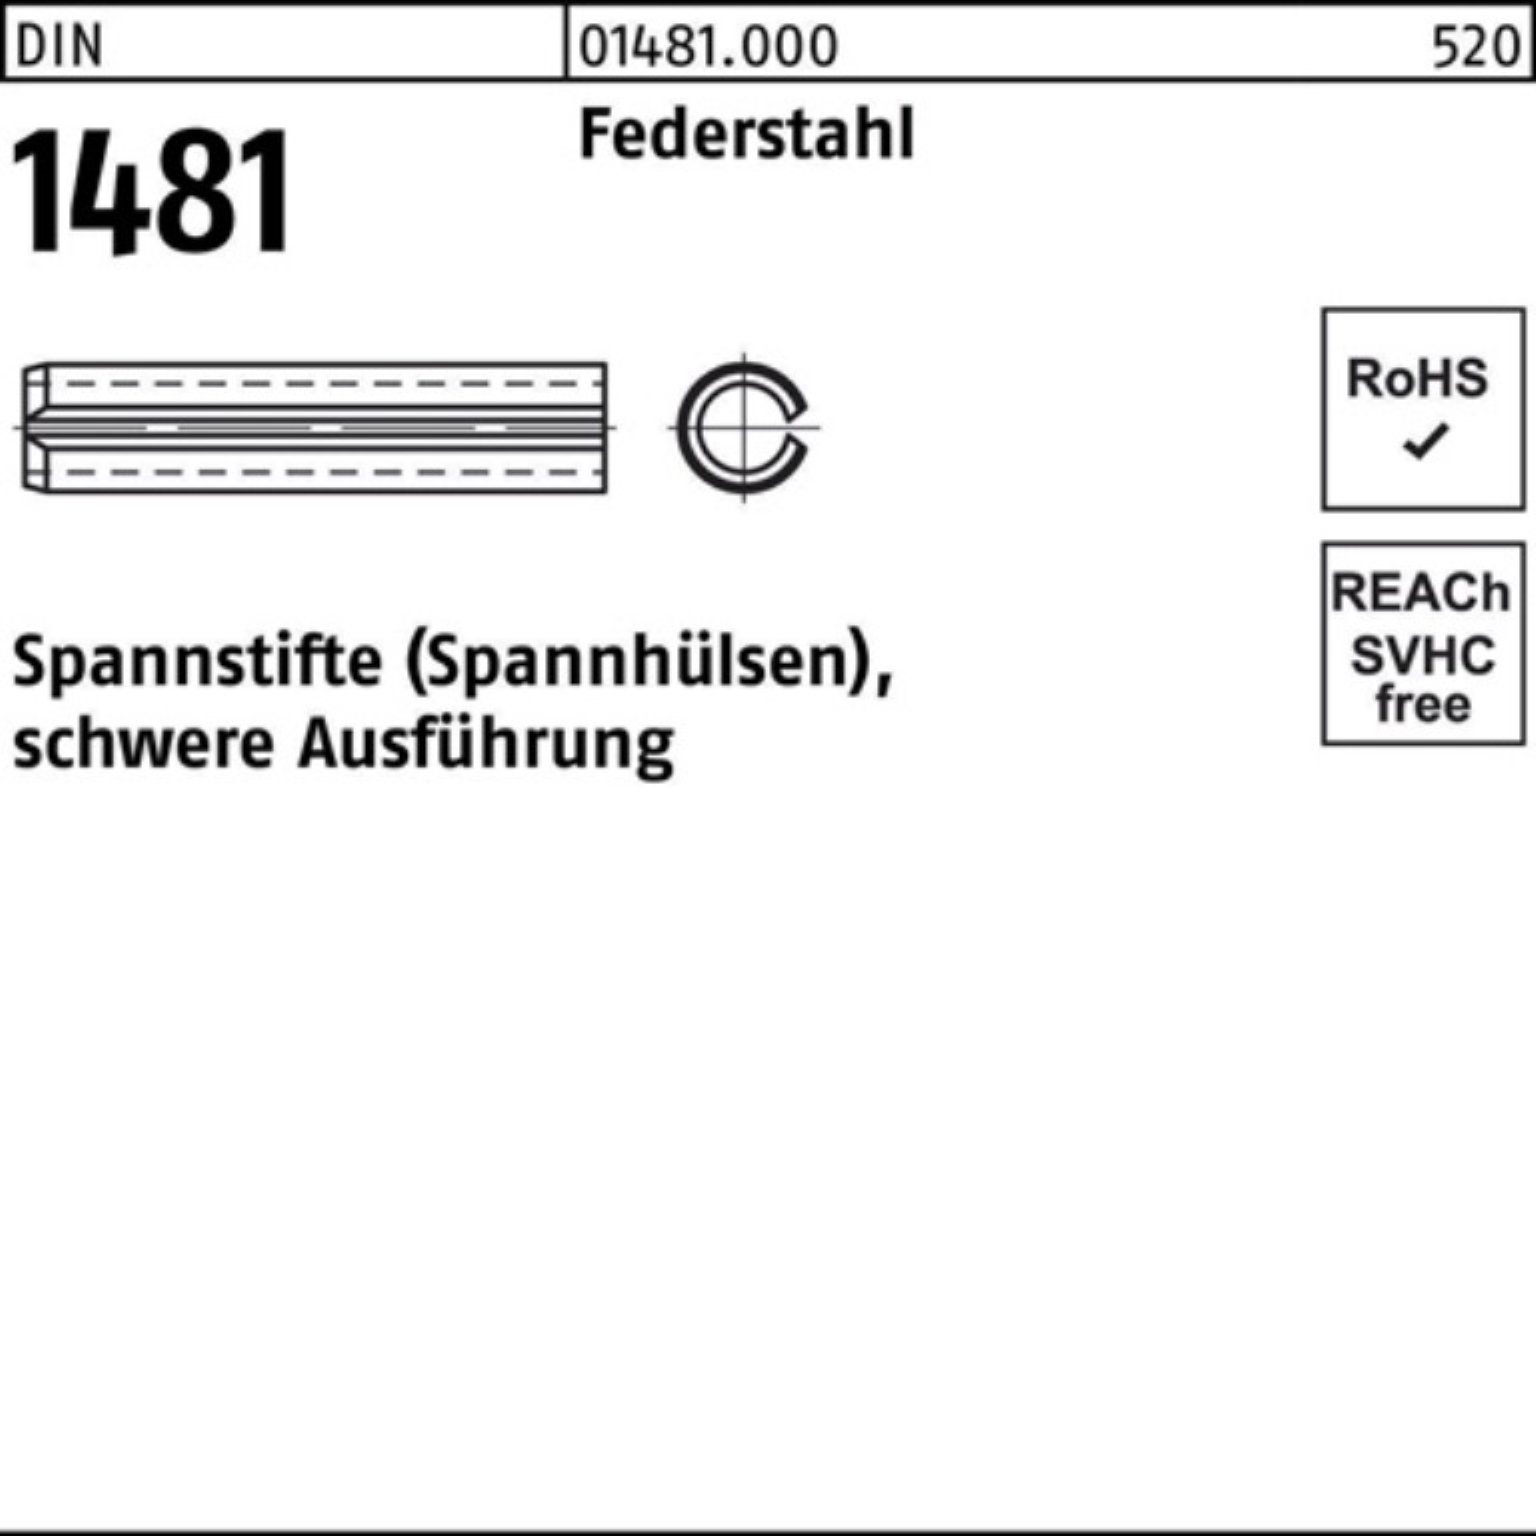 Reyher Spannstift 100er Pack Spannstift DIN 1481 14x 200 Federstahl schwere Ausführung